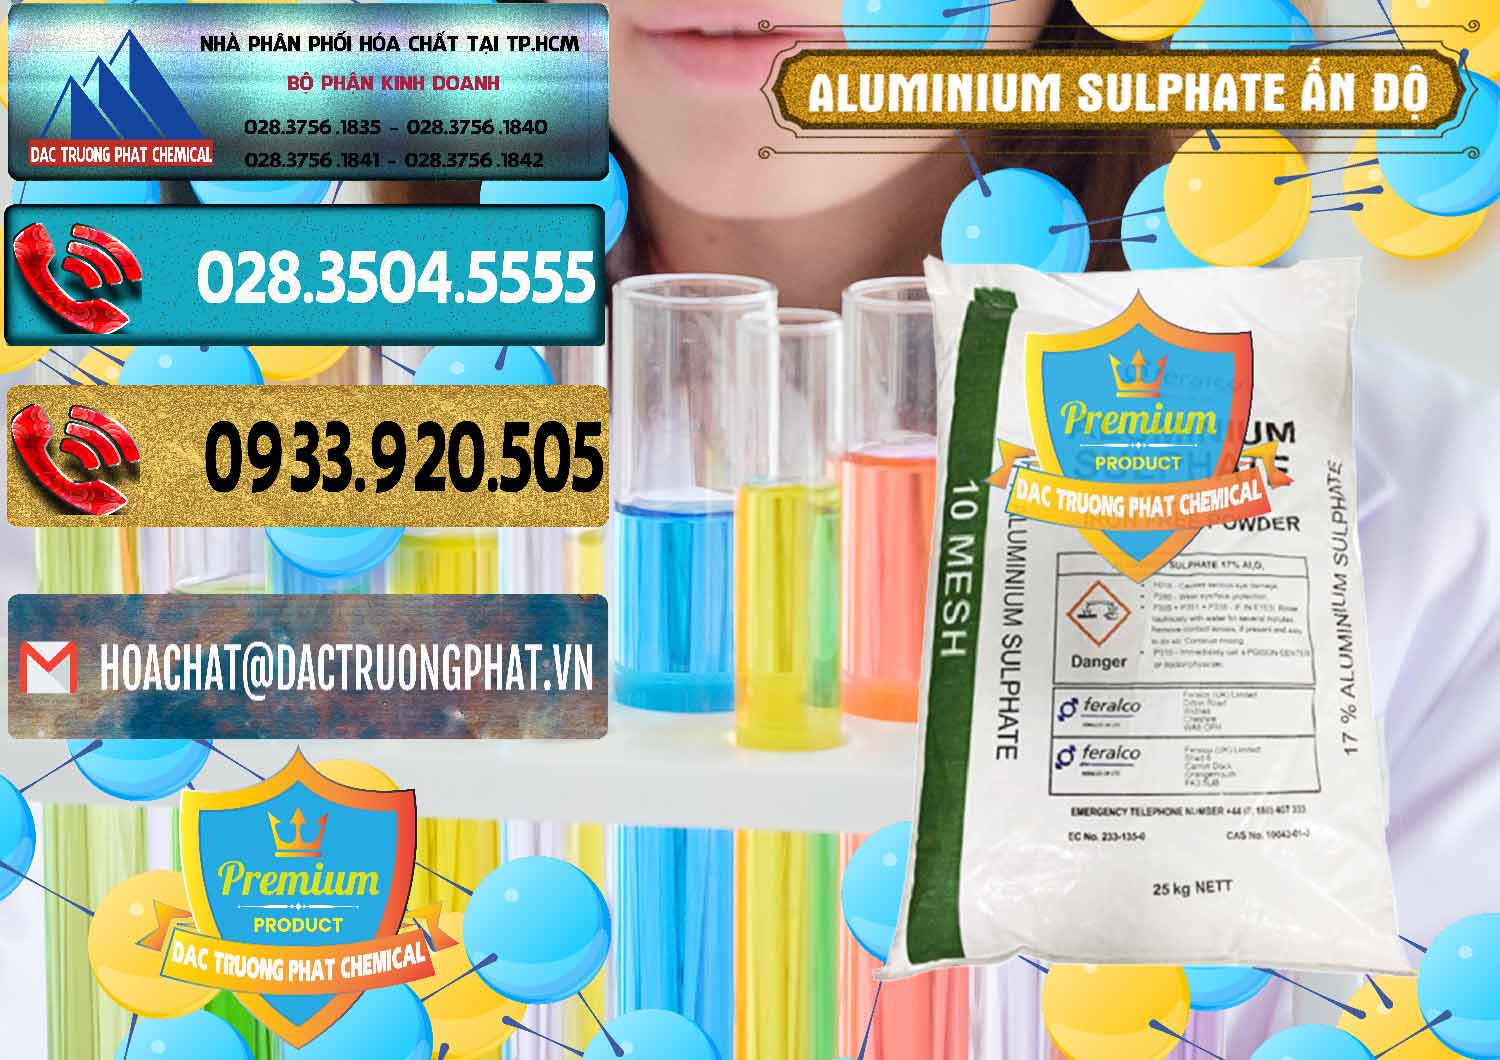 Chuyên bán _ cung cấp Phèn Nhôm - Al2(SO4)3 17% Ấn Độ India - 0463 - Cty chuyên phân phối ( bán ) hóa chất tại TP.HCM - hoachatdetnhuom.com